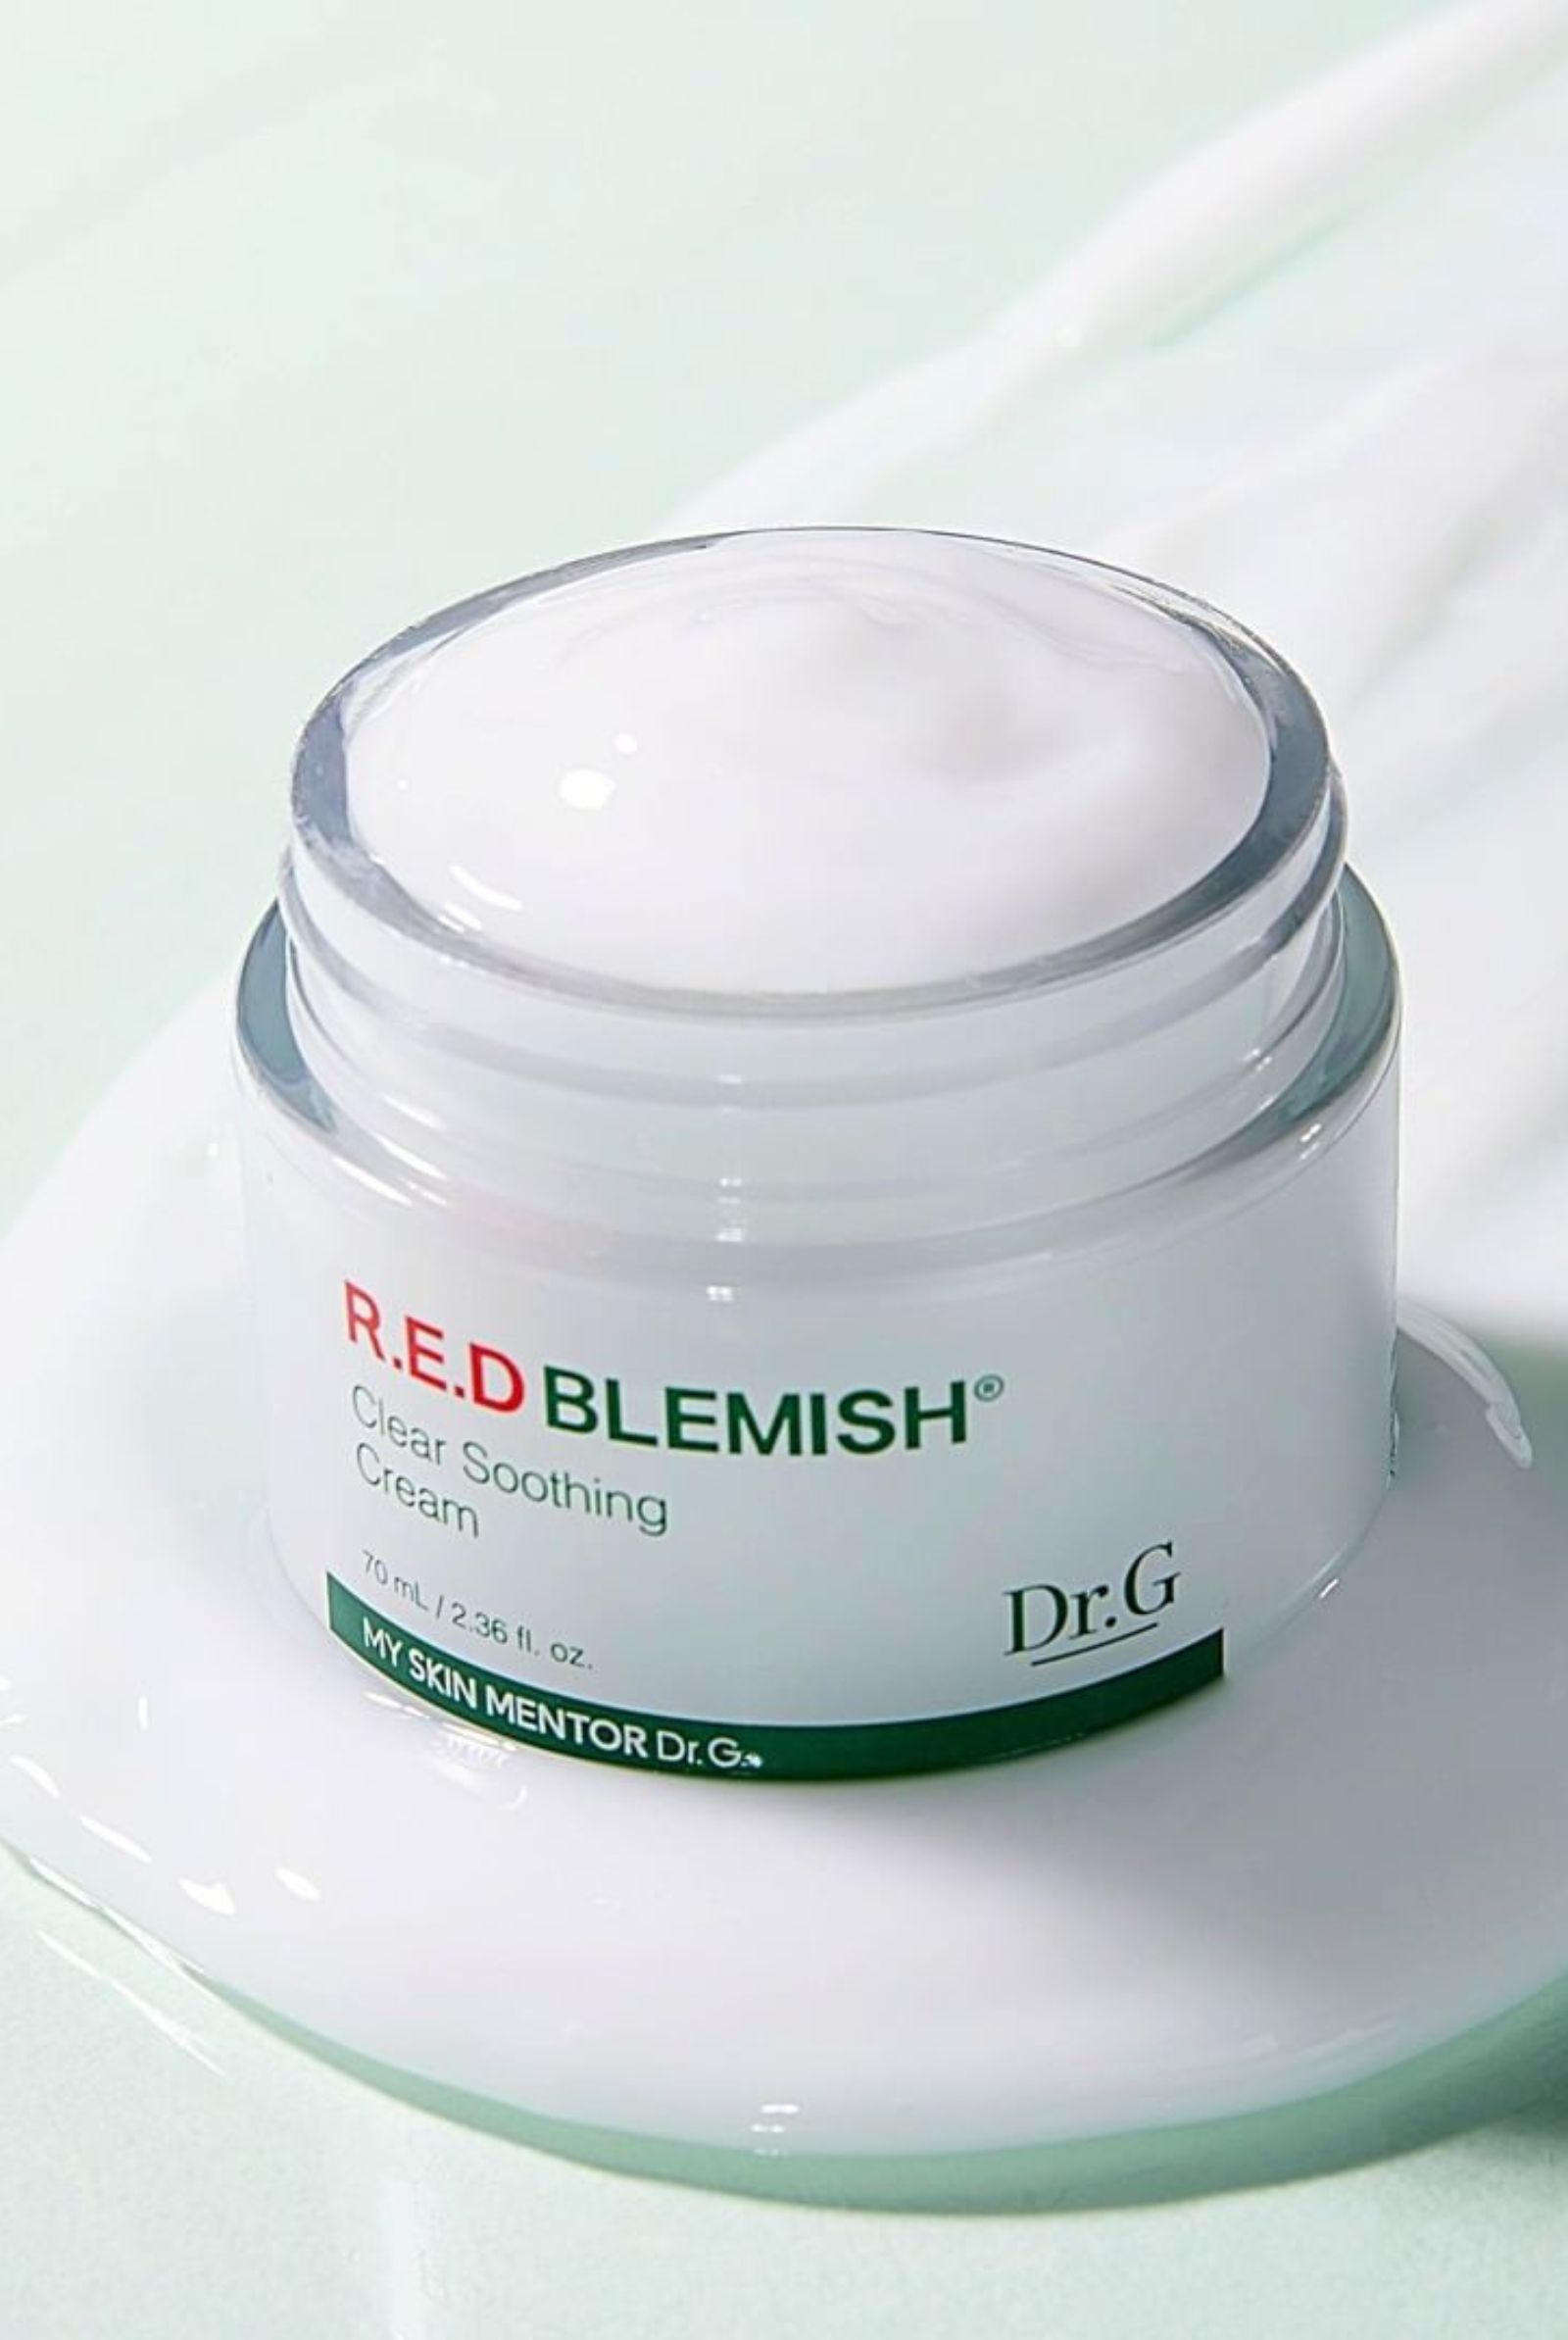 Dr. G Blemish Cream skincare